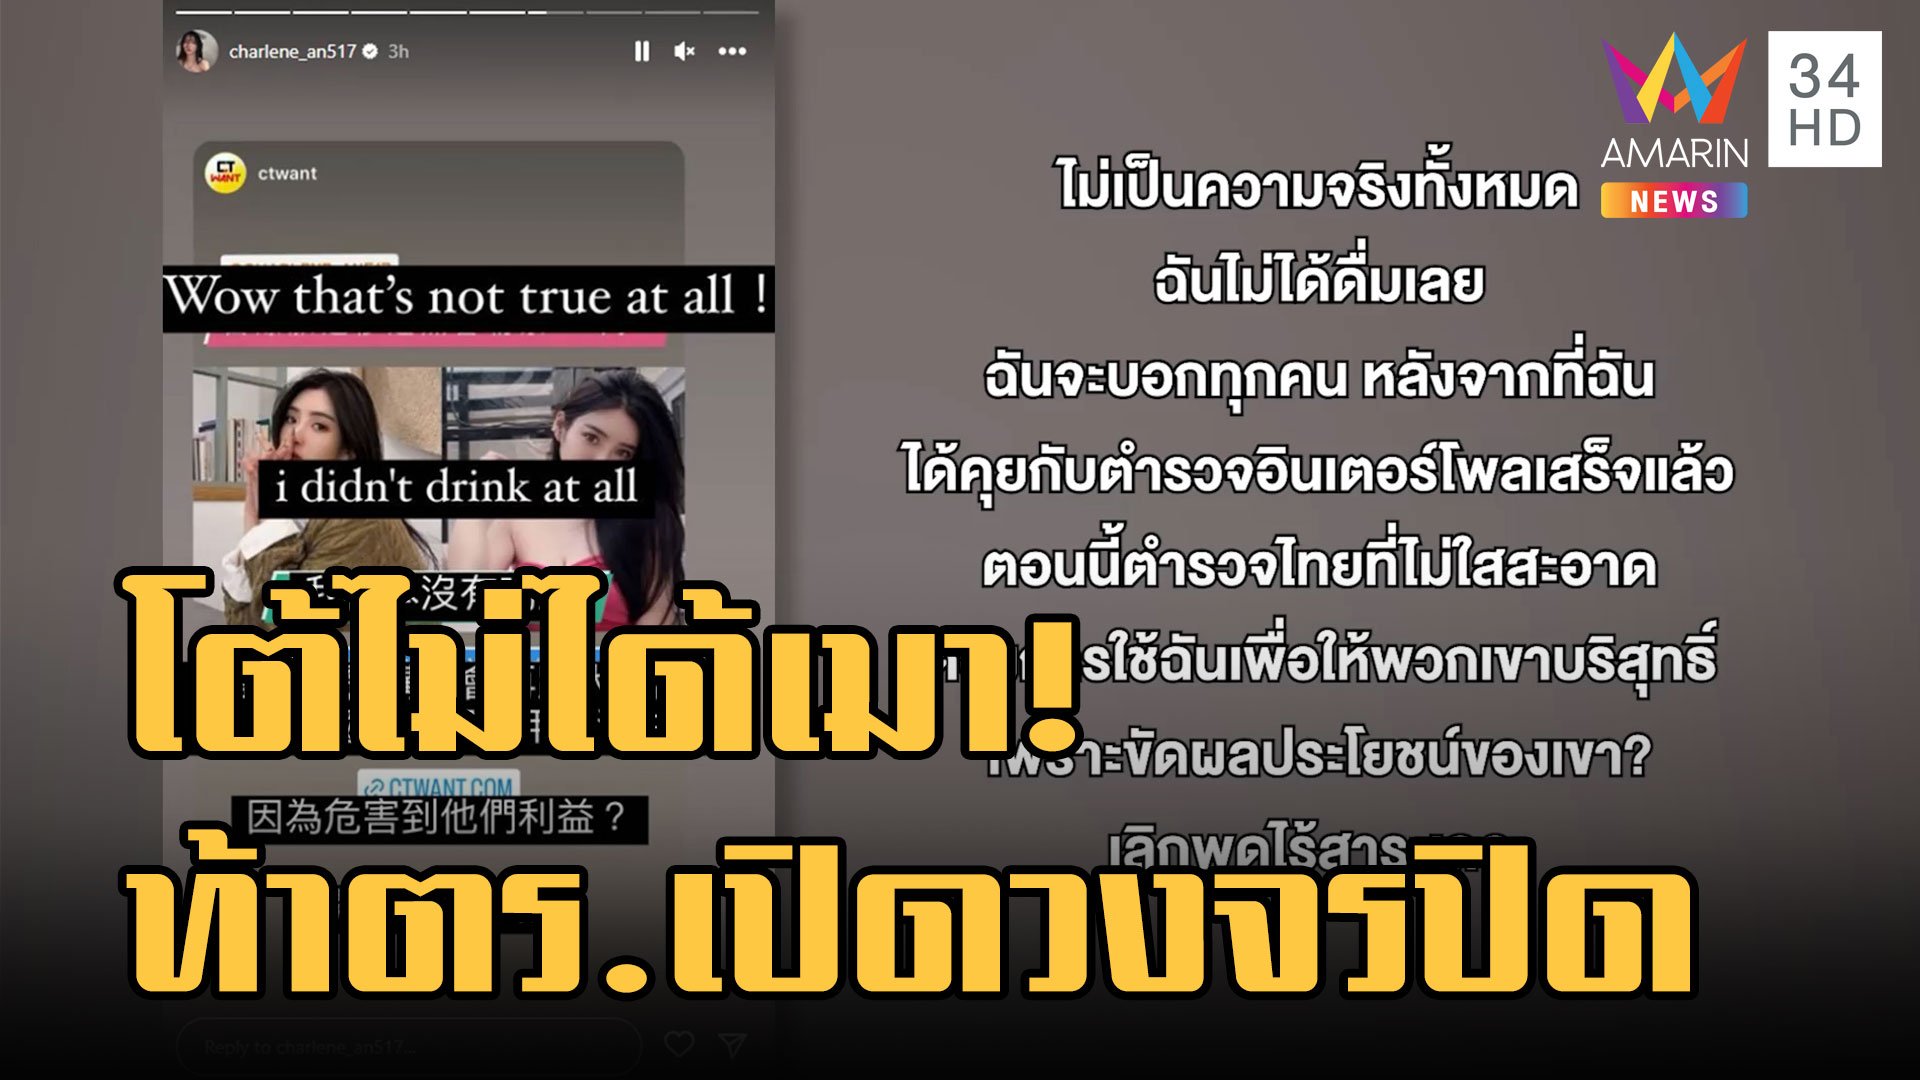 ไม่จบง่าย! ดาราไต้หวัน โต้ไม่ได้เมา ท้าตำรวจไทยเปิดวงจรปิด | ข่าวอรุณอมรินทร์ | 28 ม.ค. 66 | AMARIN TVHD34